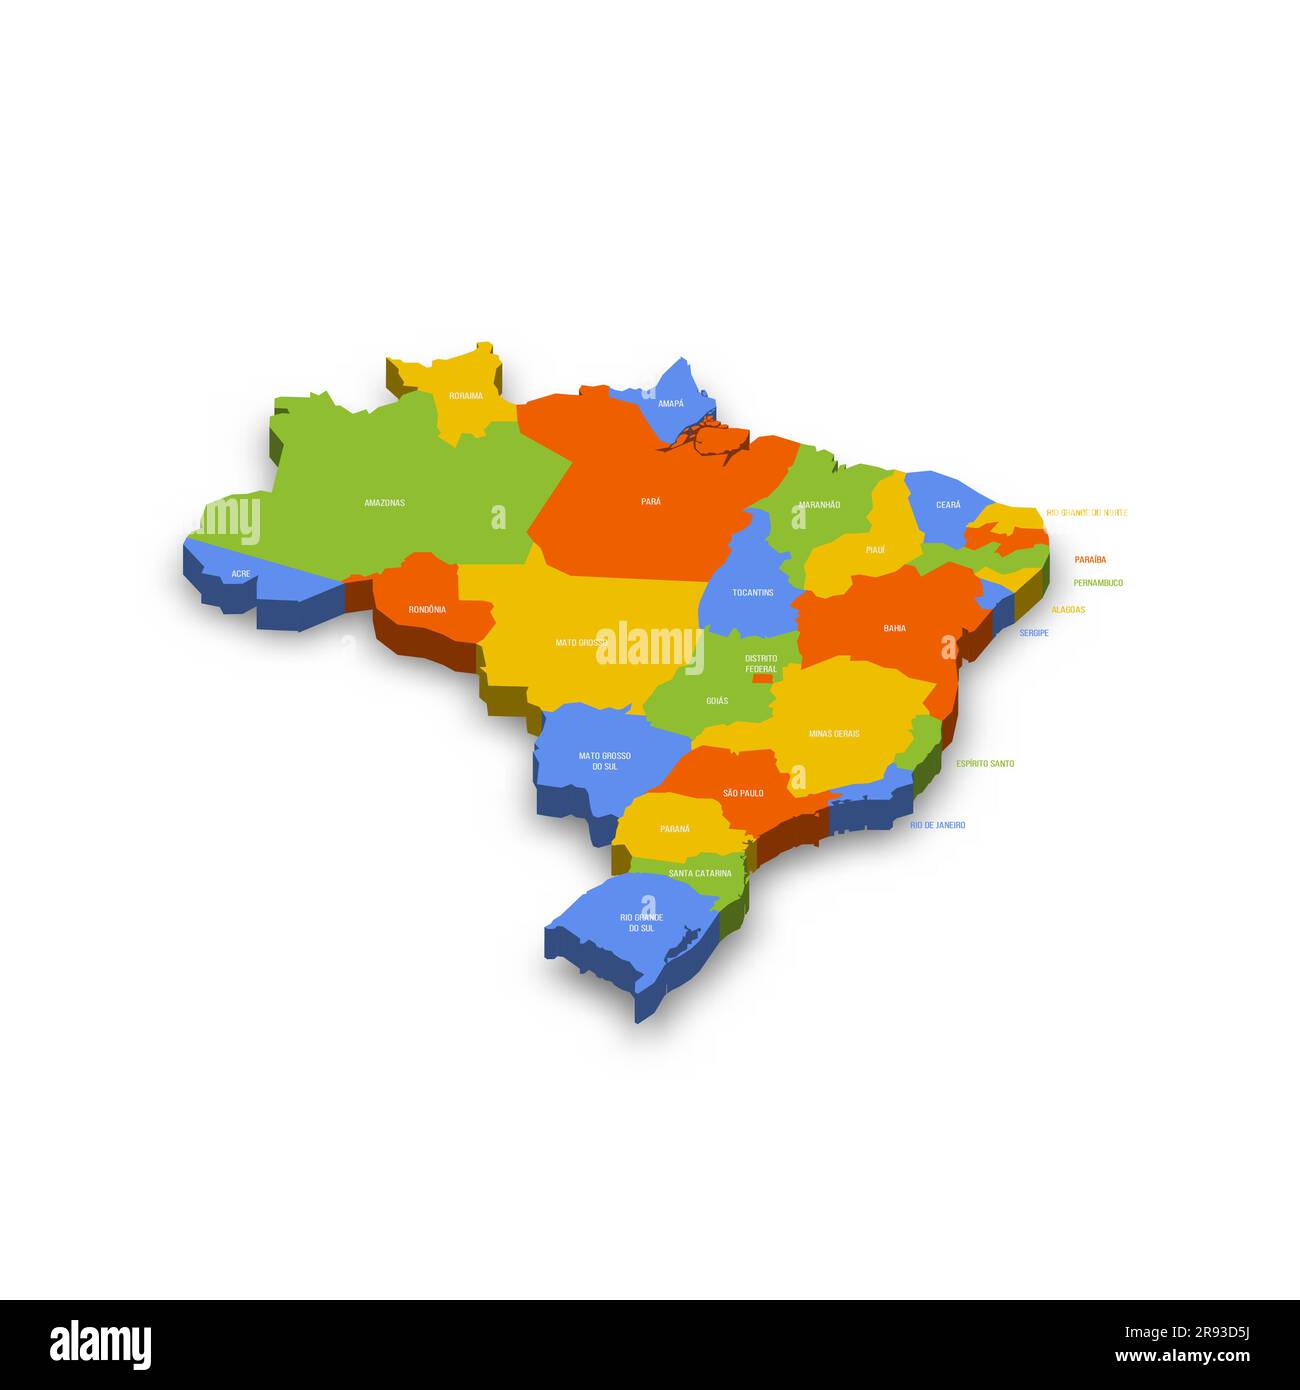 Politische Karte Brasiliens der Verwaltungsabteilungen - Föderative Einheiten Brasiliens. Farbenfrohe 3D-Vektorkarte mit Ländernamen und Schatten. Stock Vektor